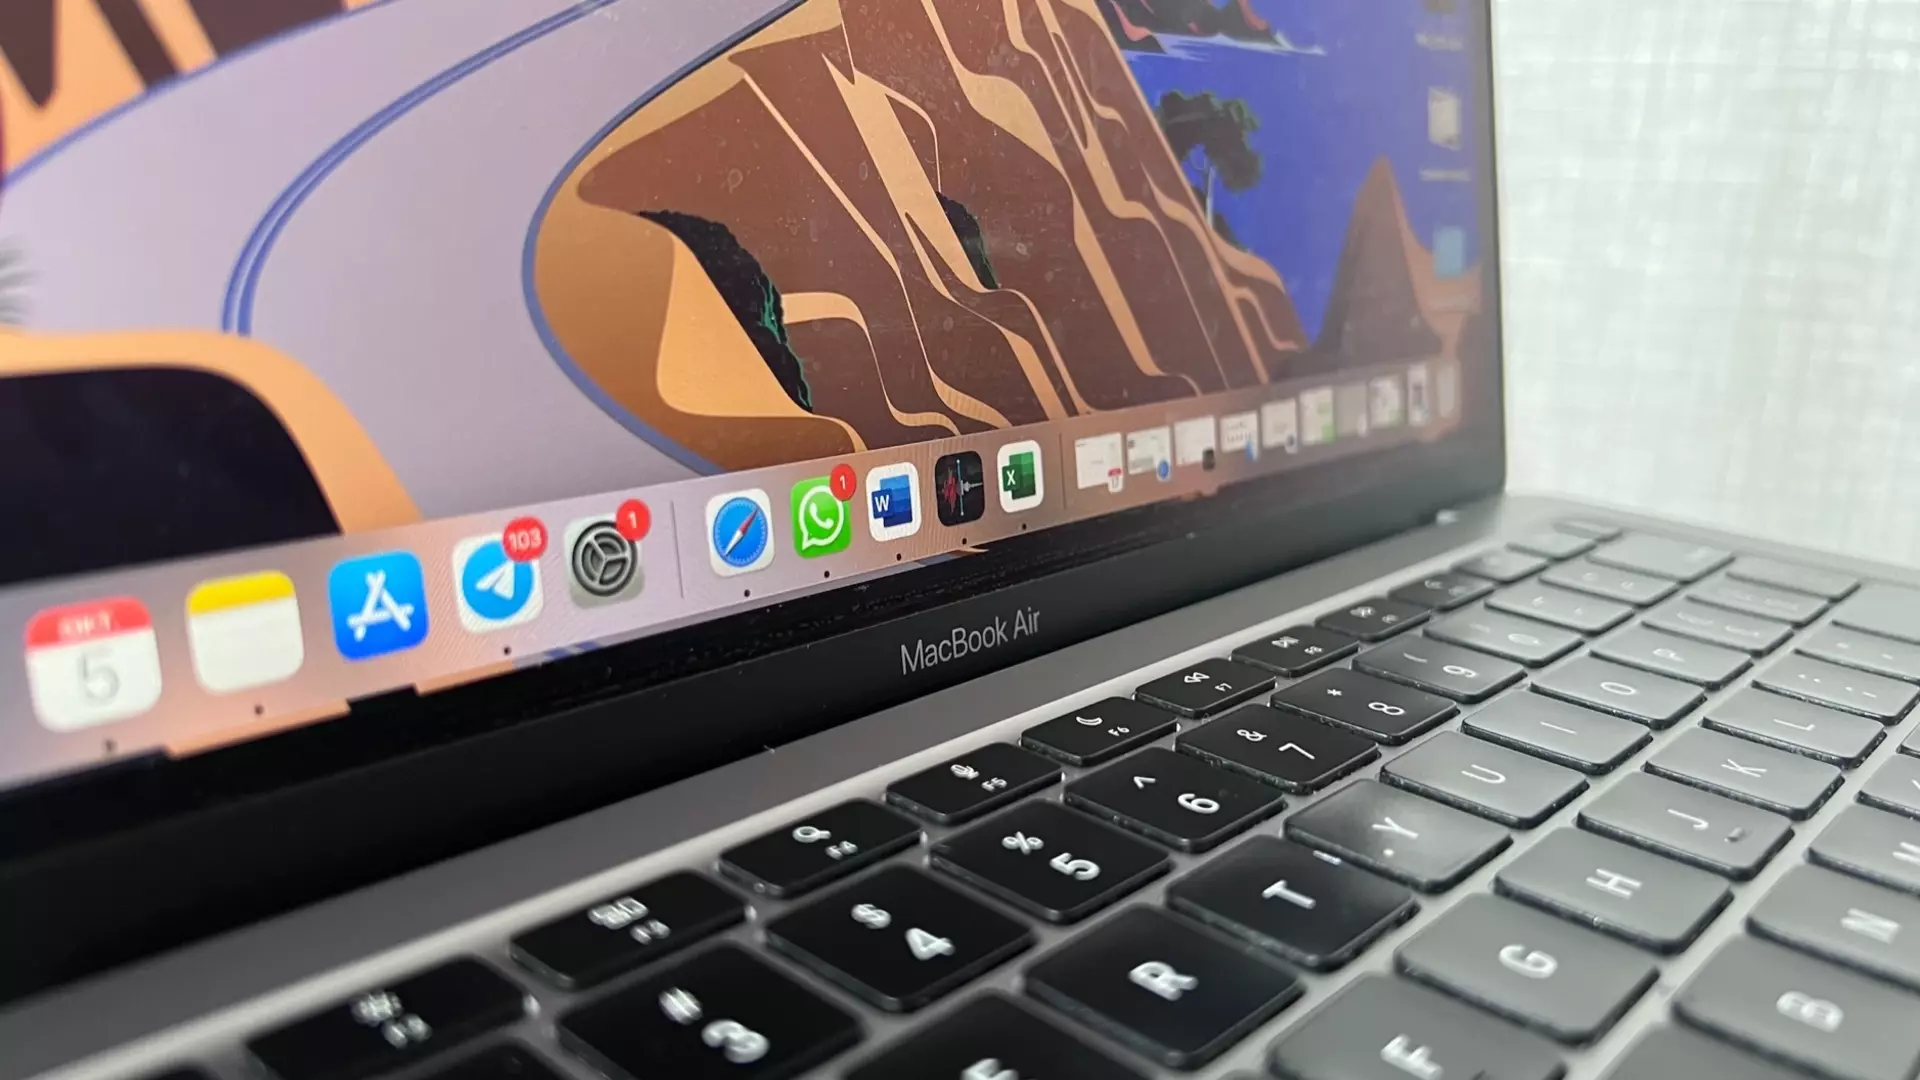 Мужчина похитил из ИТ-парка в Казани MacBook на 4,3 млн рублей